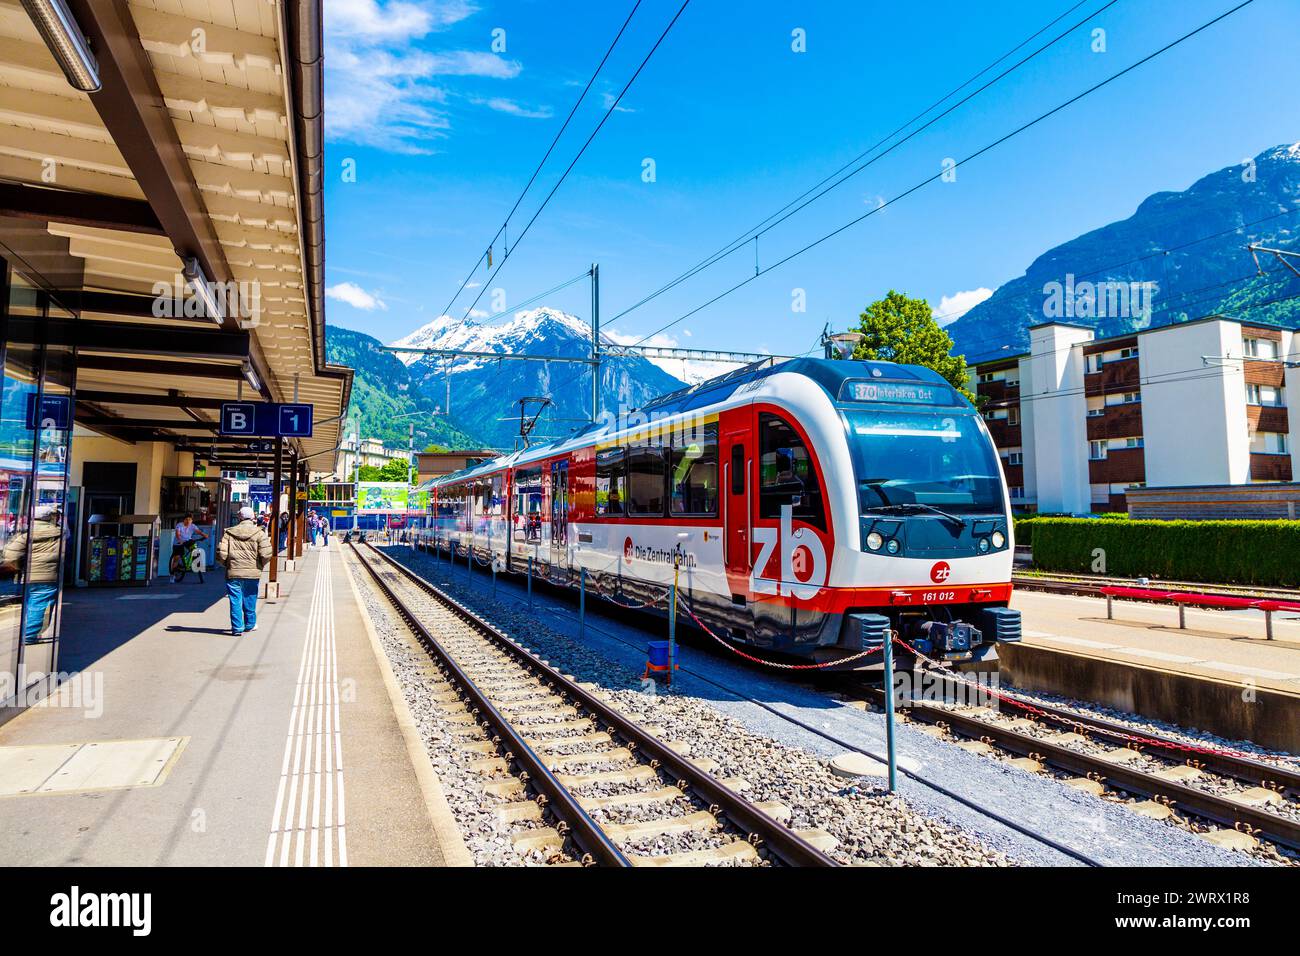 Die Zentralbahn ZB train at the train station in Meiringen, Switzerland Stock Photo